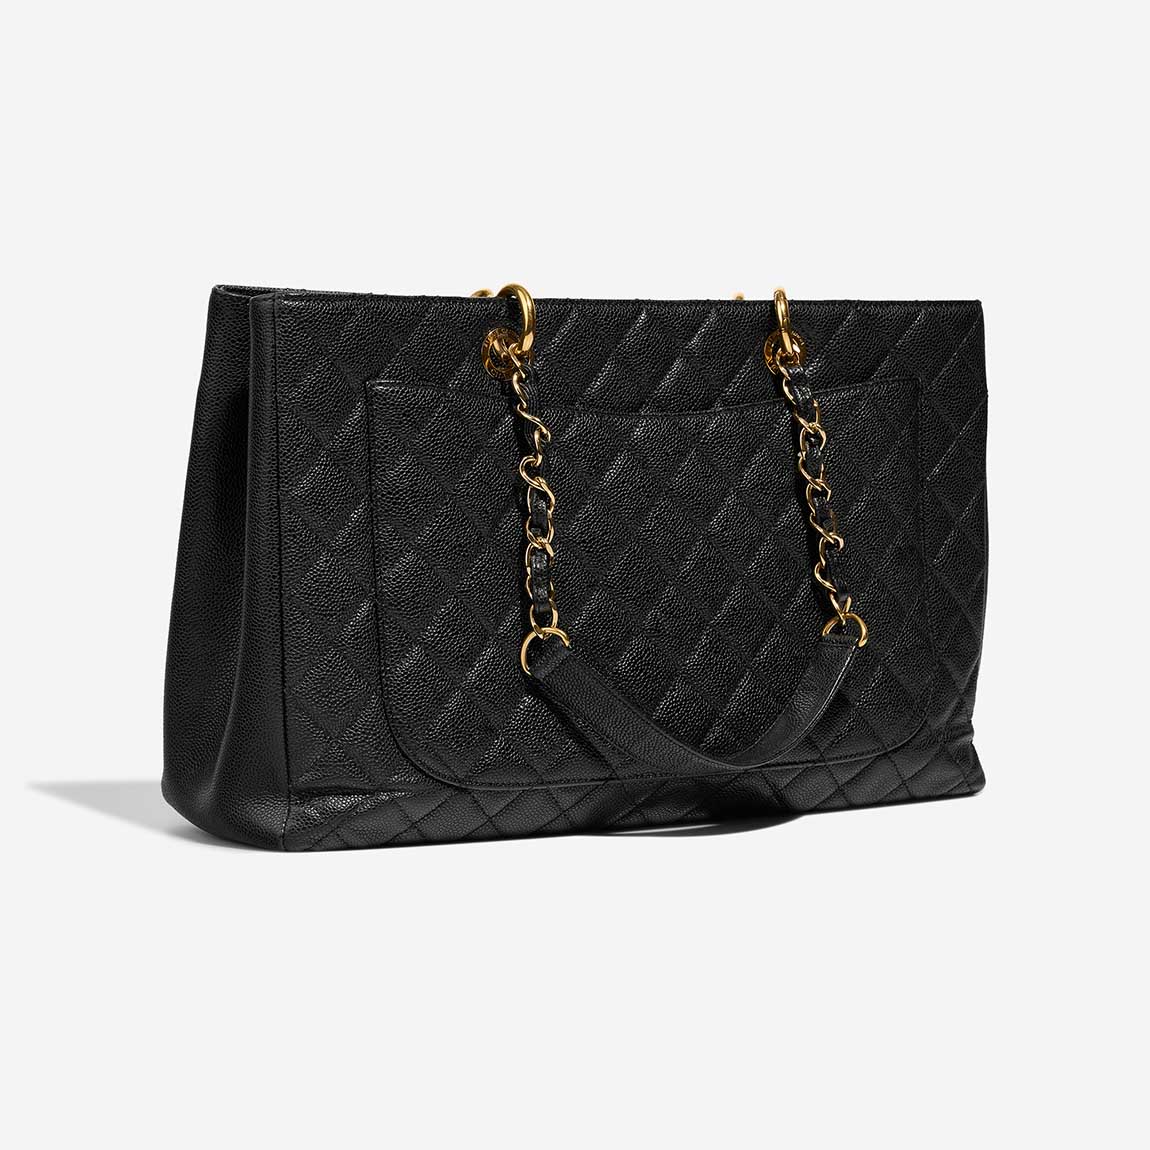 Chanel GST Grande Black Side Back | Sell your designer bag on Saclab.com